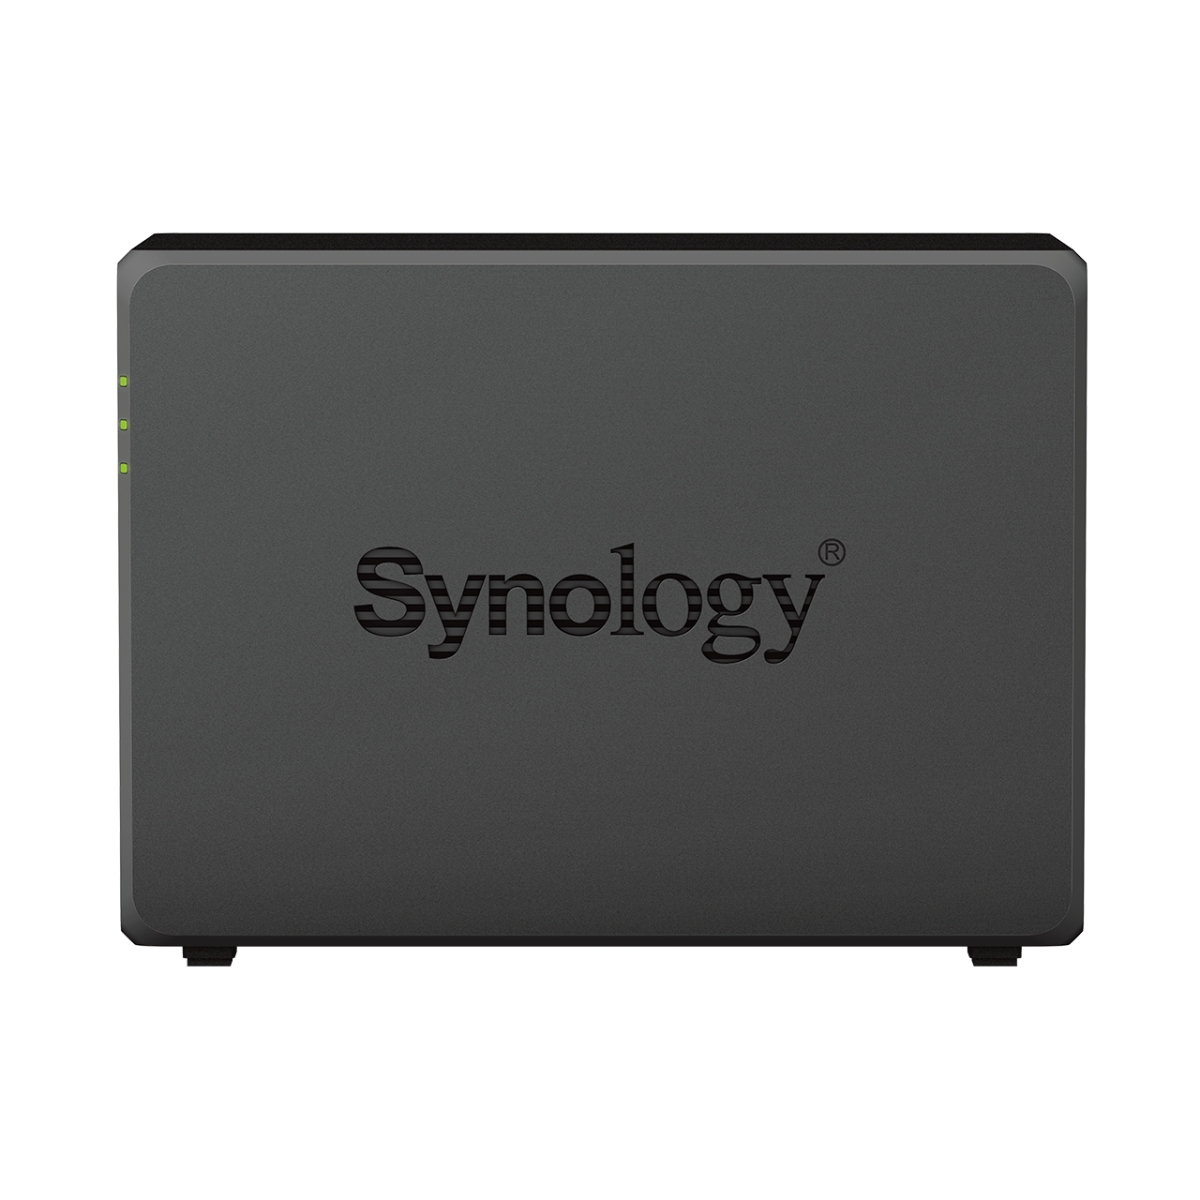 Obrázek Synology DS723+ DiskStation